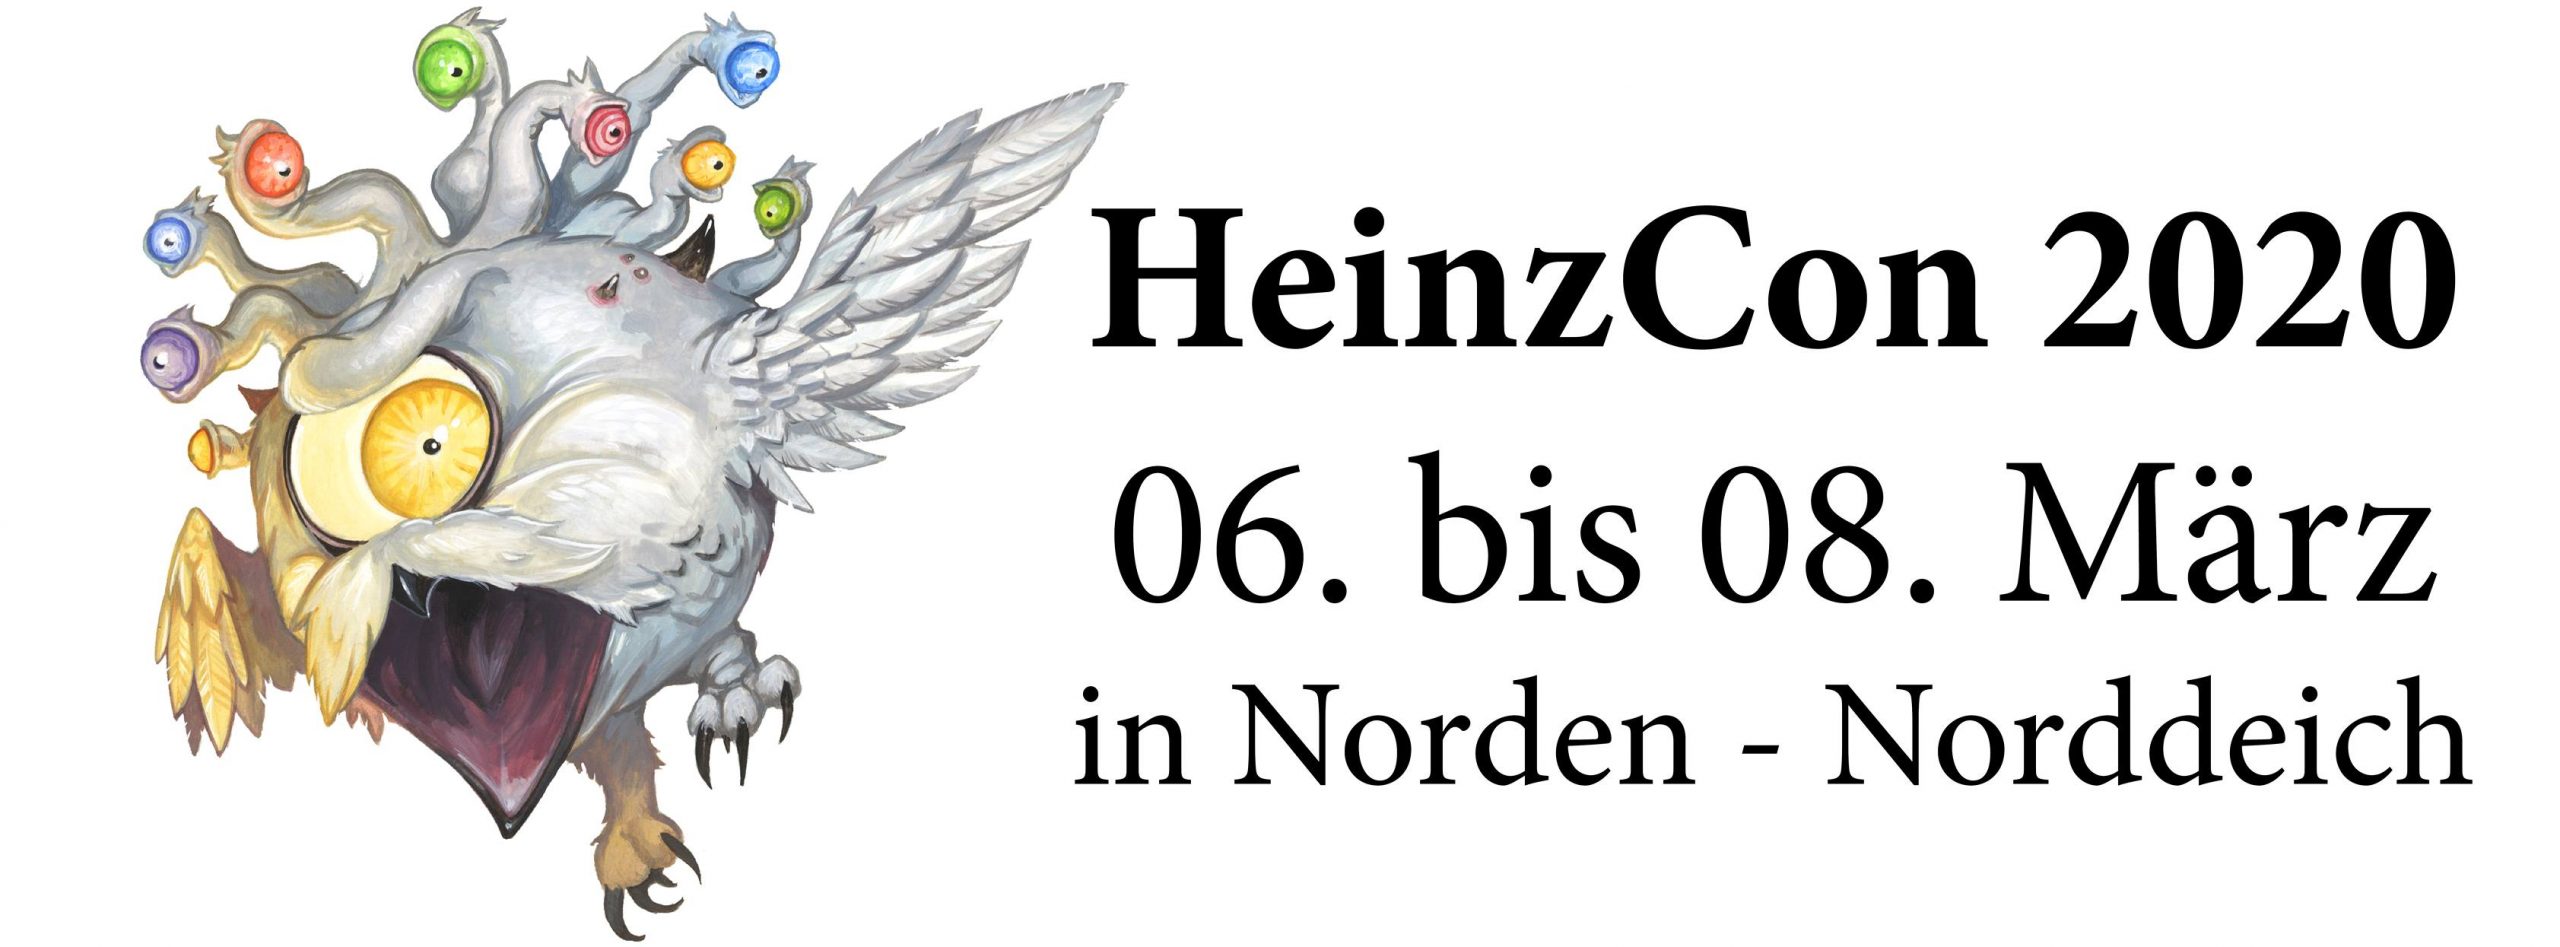 HeinzCon 2020